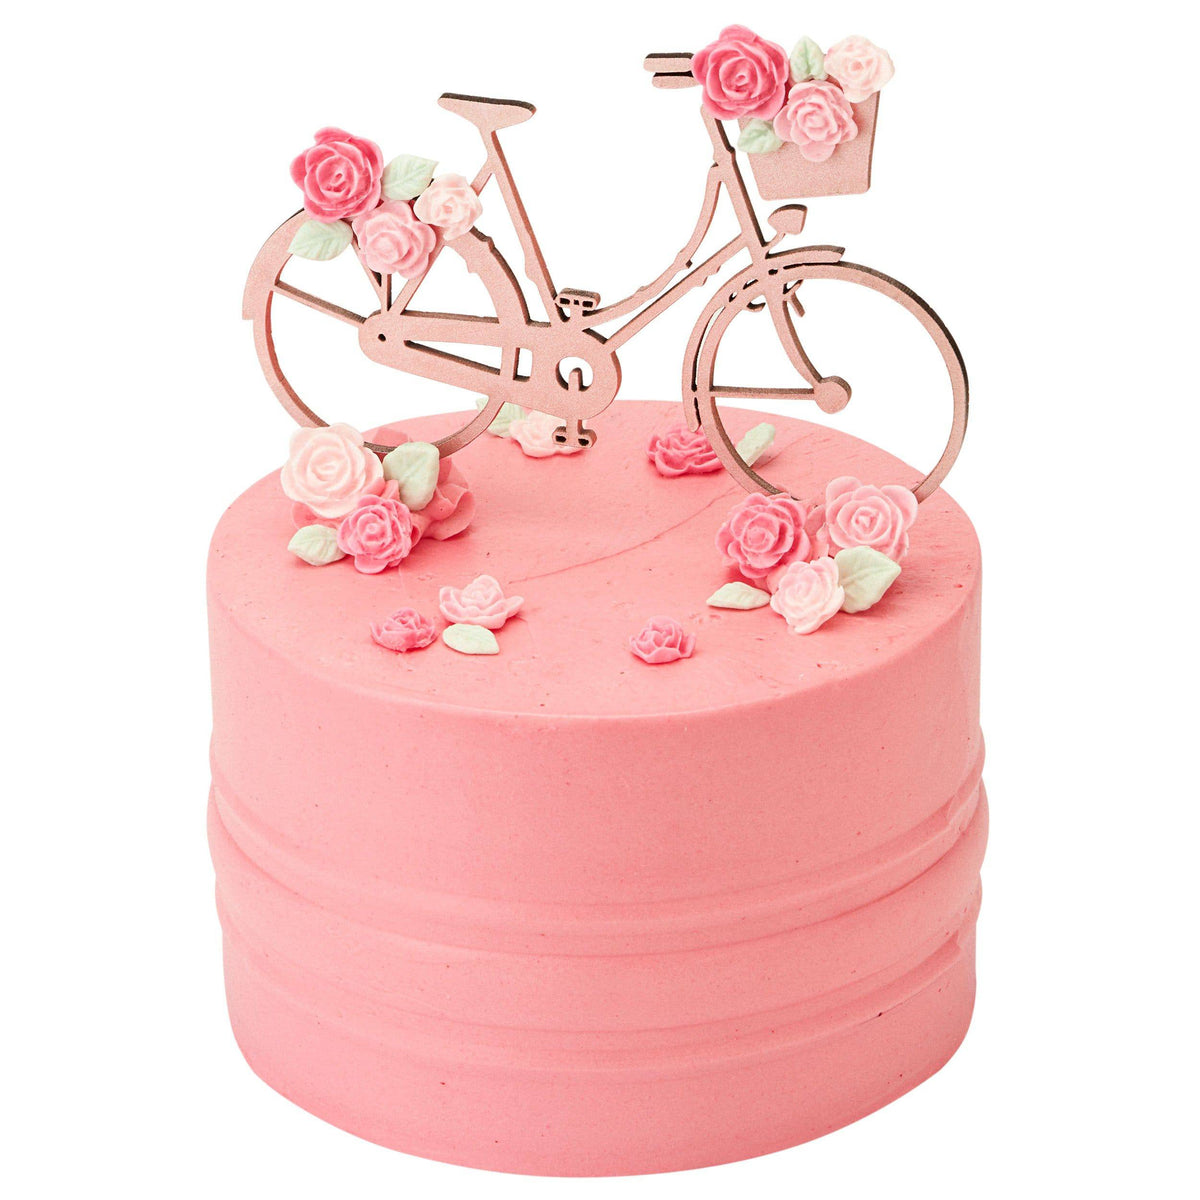 Ktm Bikers Cake- Order Online Ktm Bikers Cake @ Flavoursguru